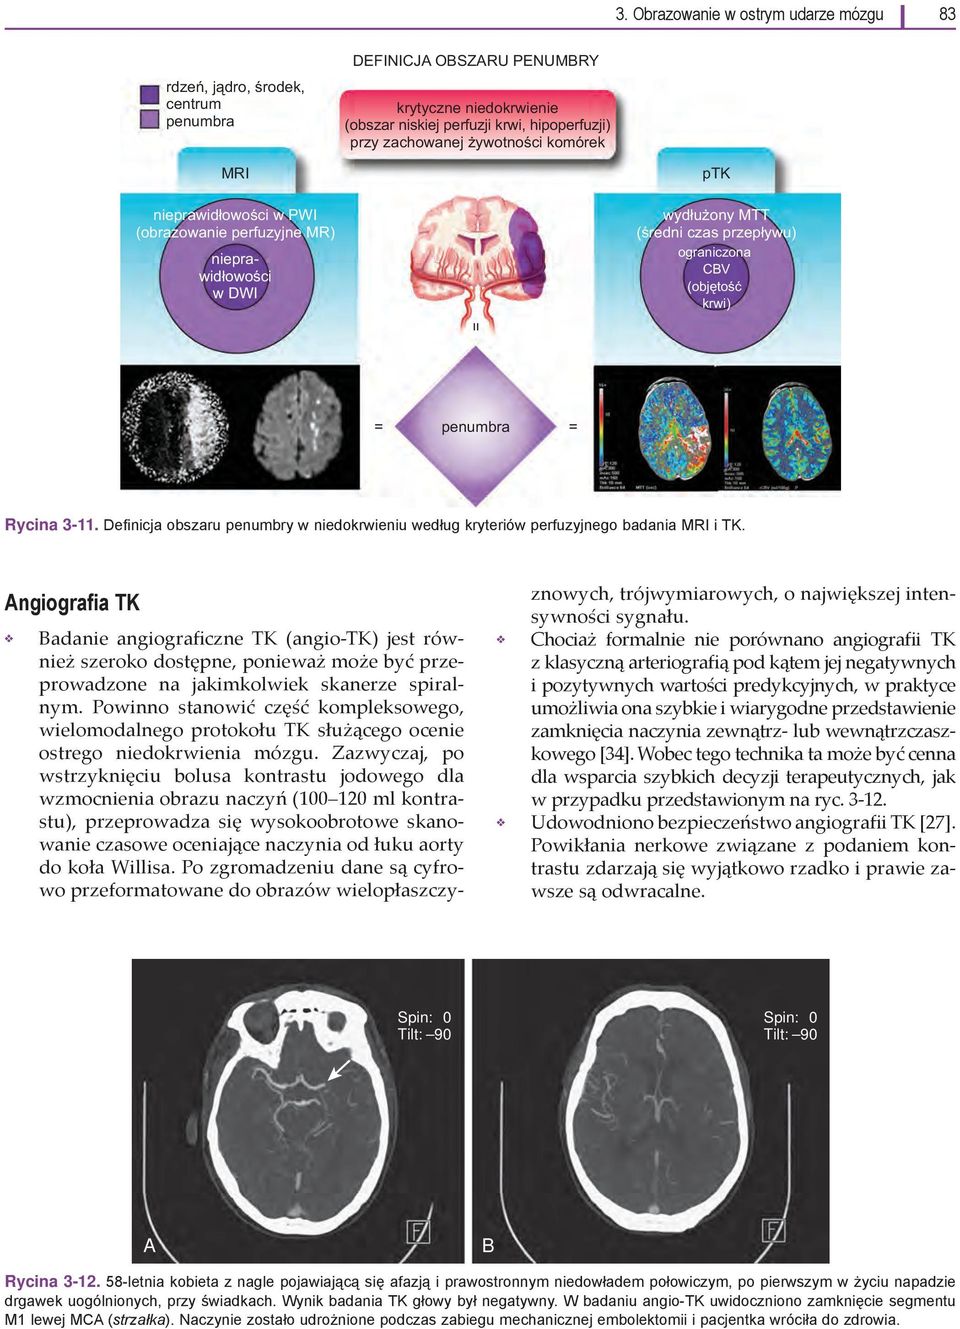 Definicja obszaru penumbry w niedokrwieniu według kryteriów perfuzyjnego badania MRI i TK.